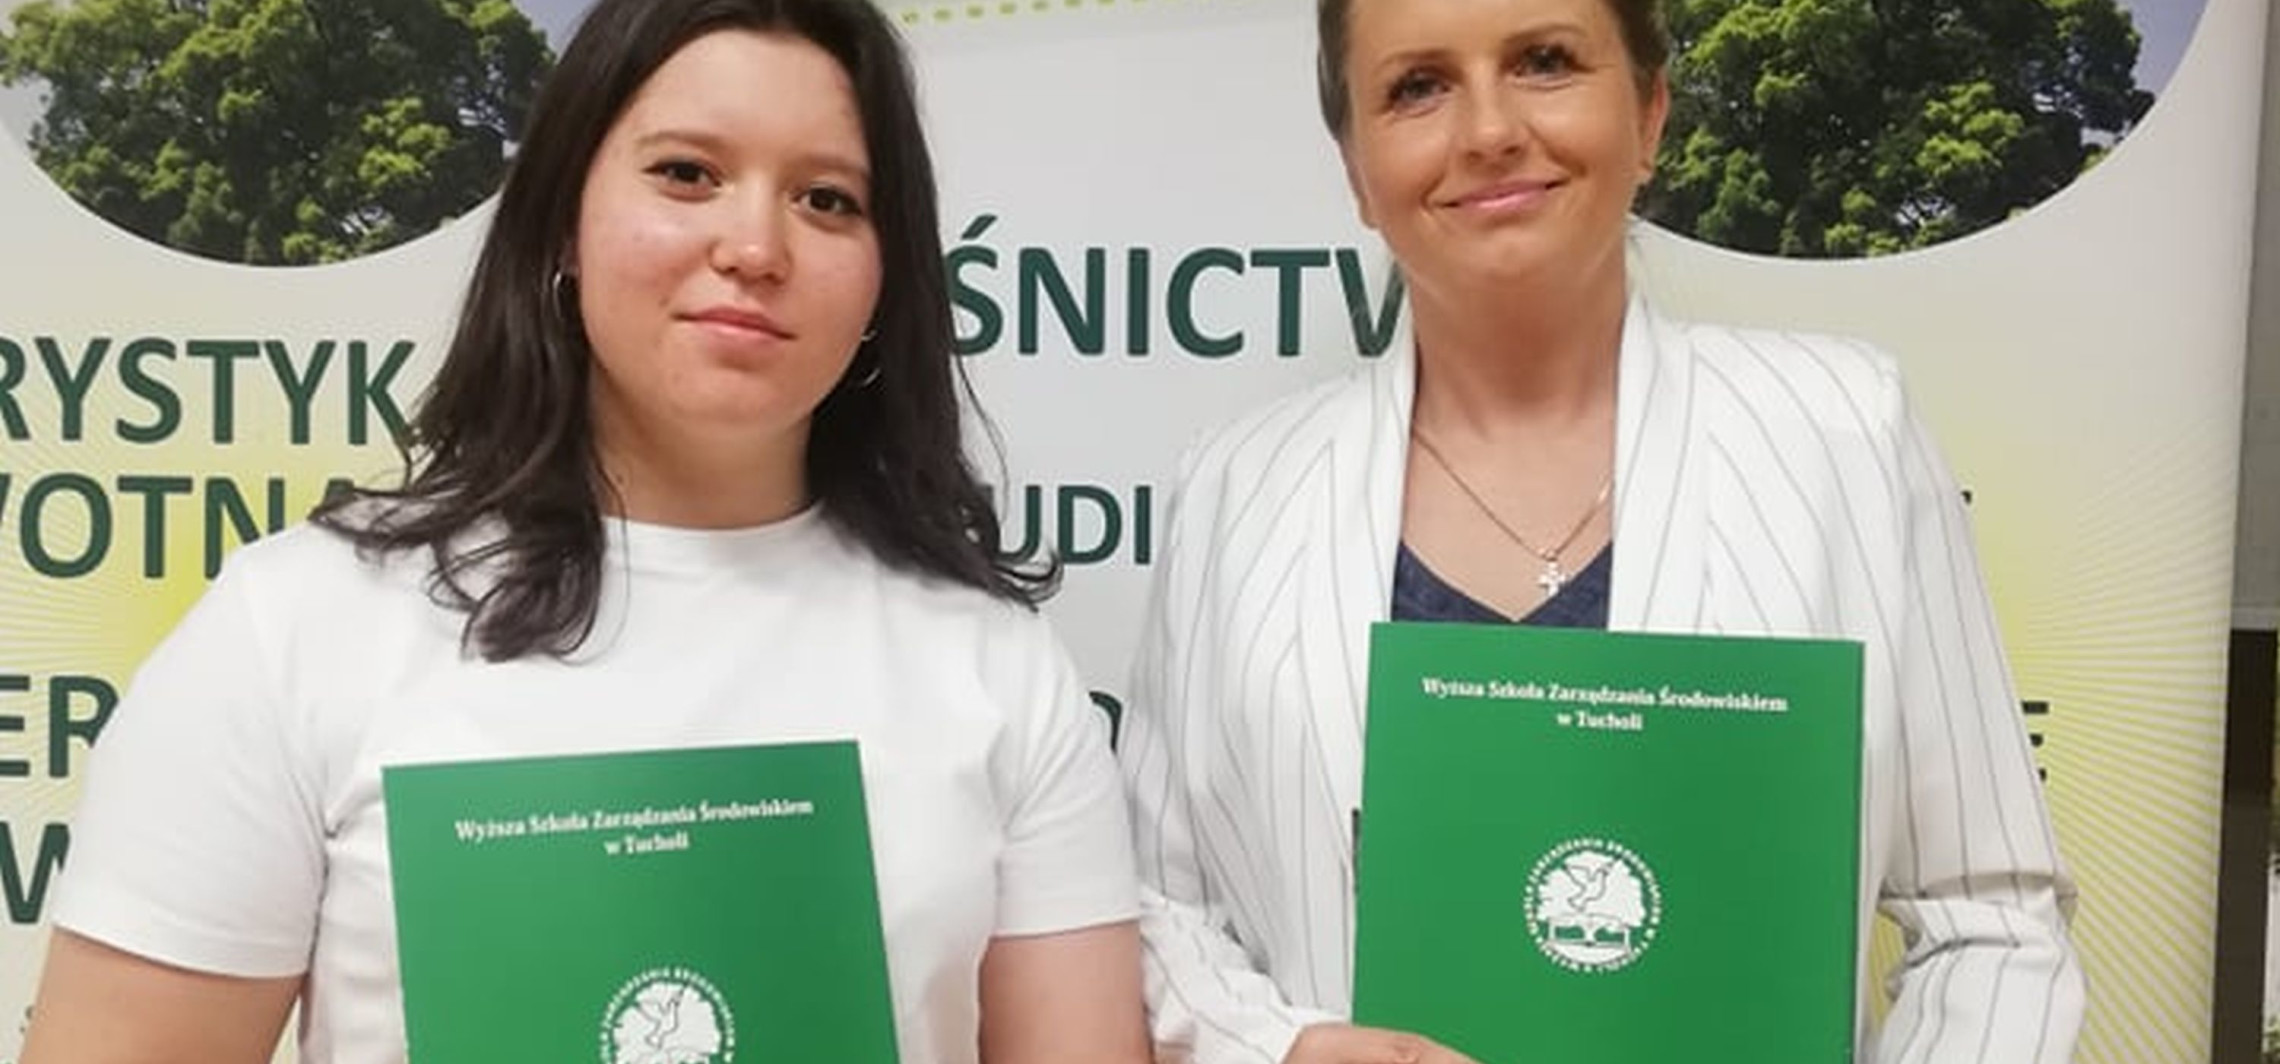 Inowrocław - Ekologiczny sukces uczennicy "Chemika"